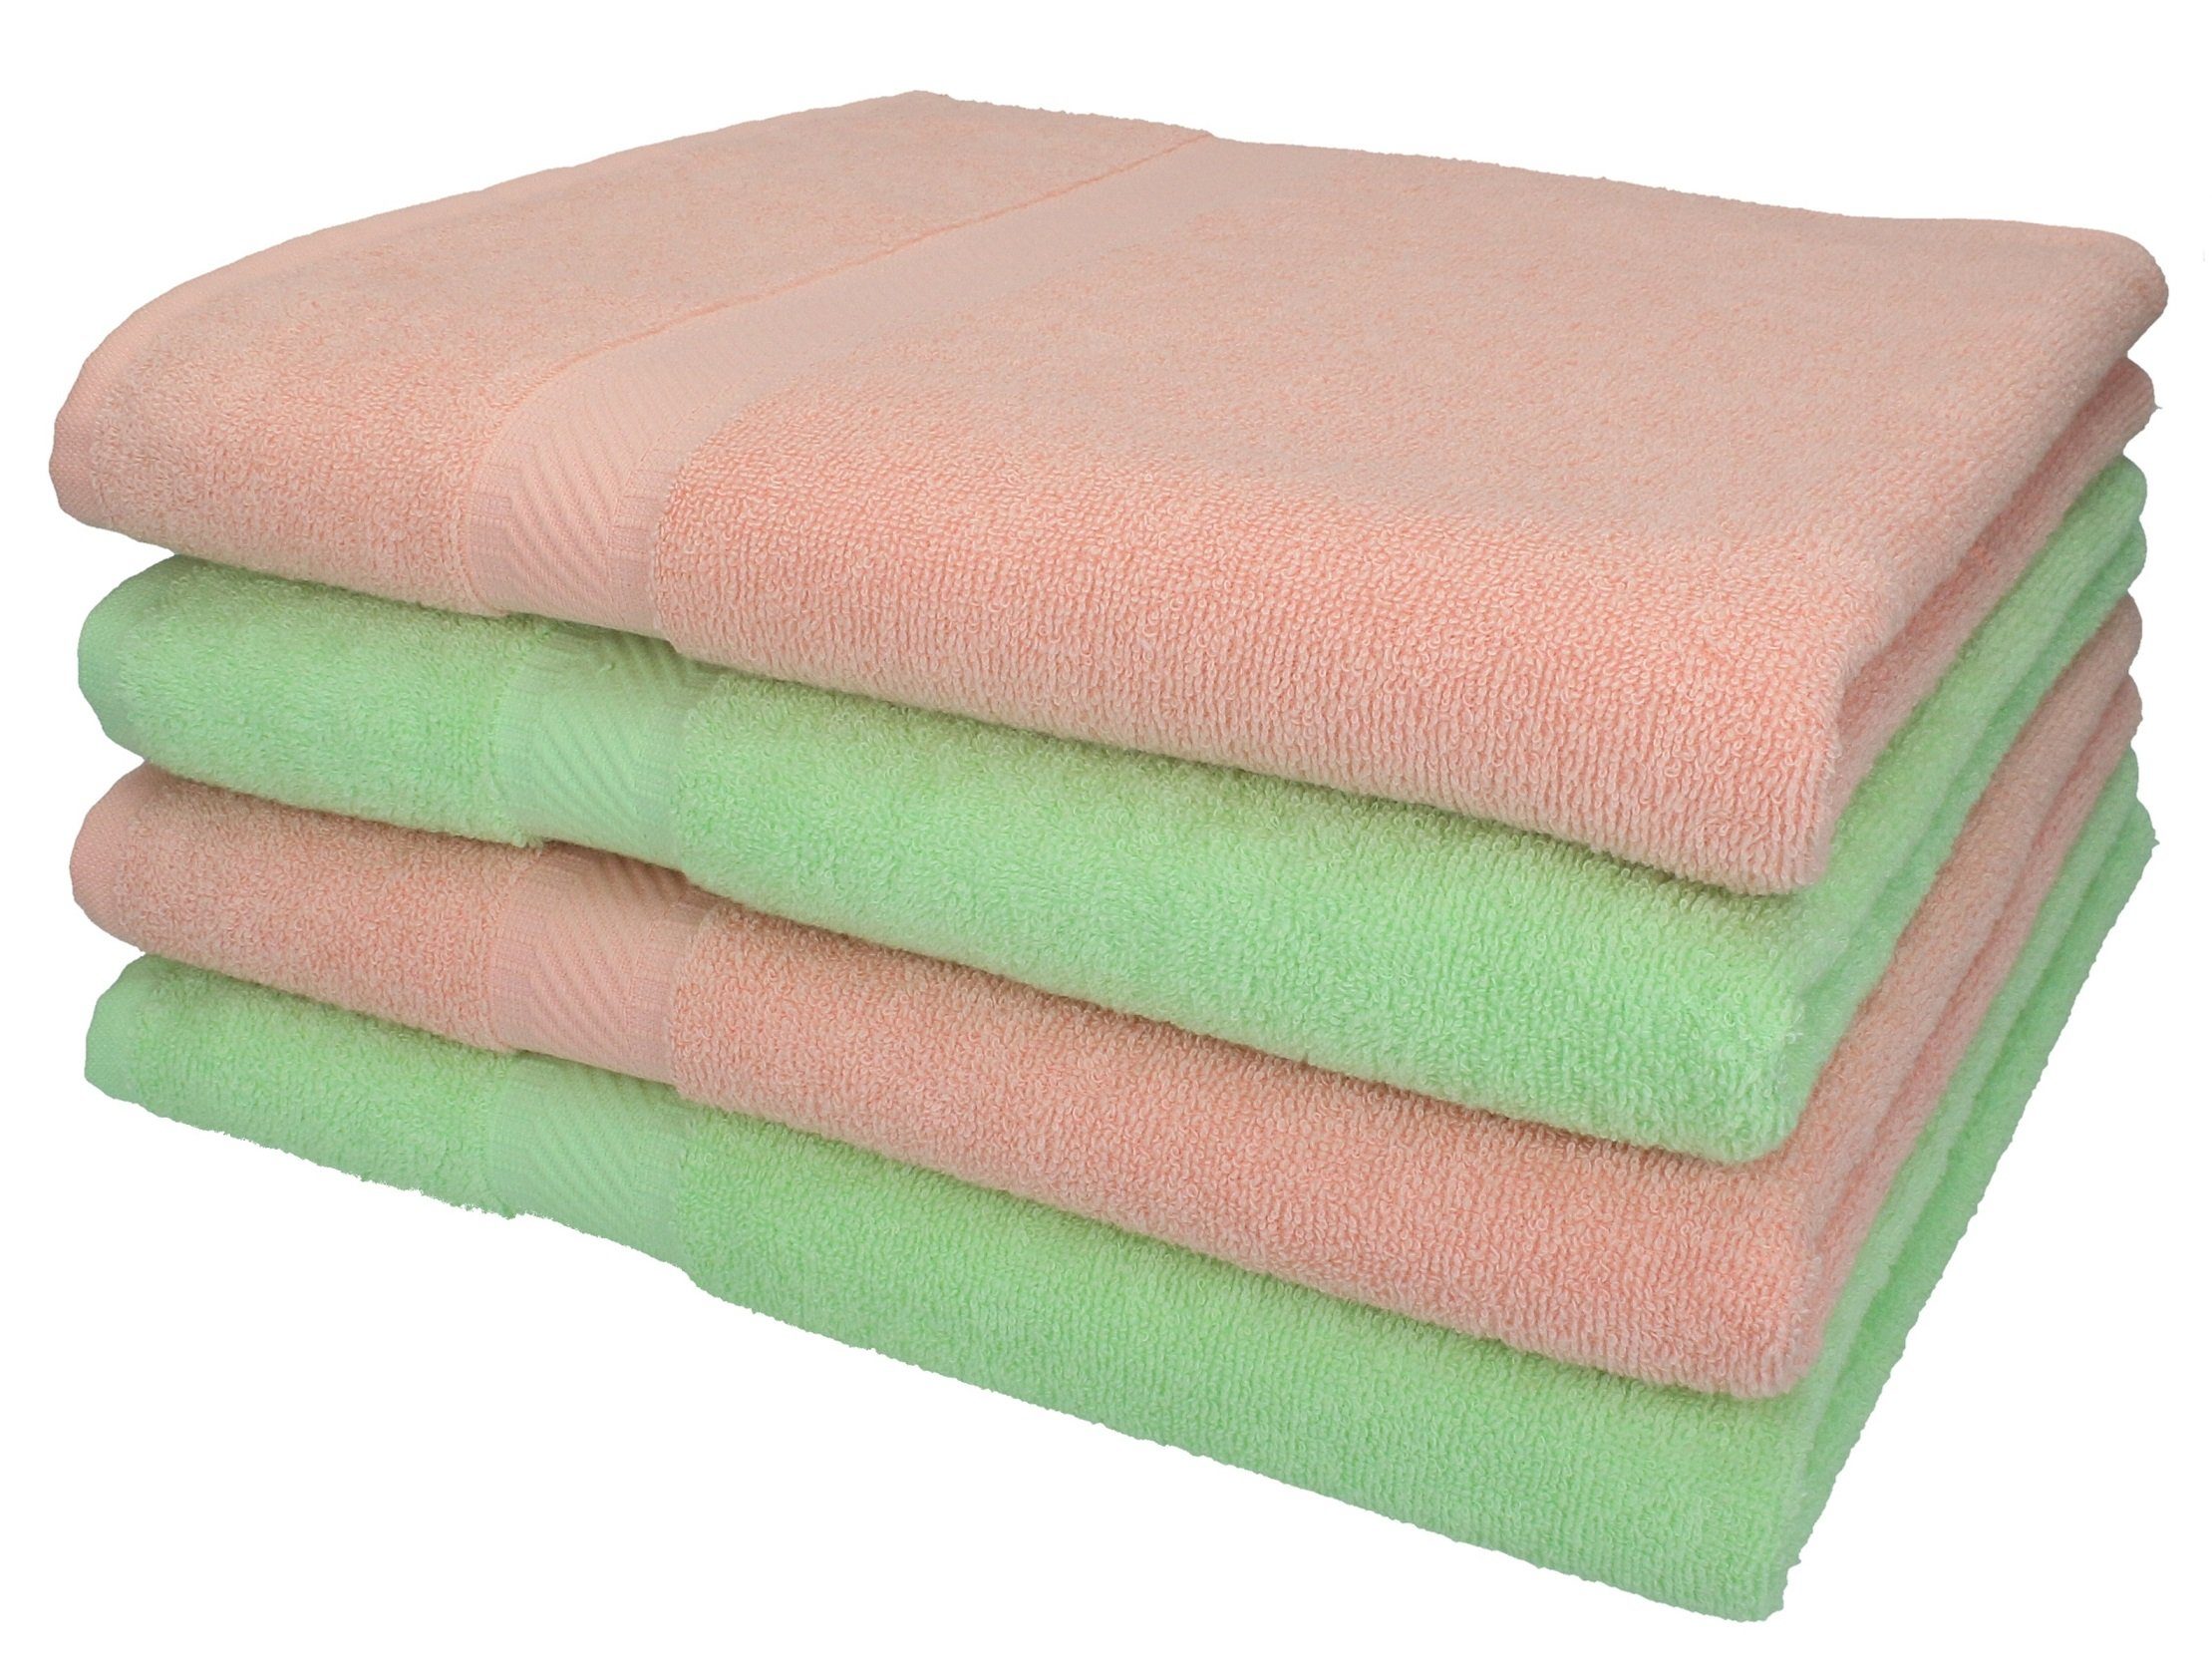 Betz Duschtücher 4 Stück Duschtücher Duschtuch-Set Palermo 70x140 cm apricot und grün, 100% Baumwolle